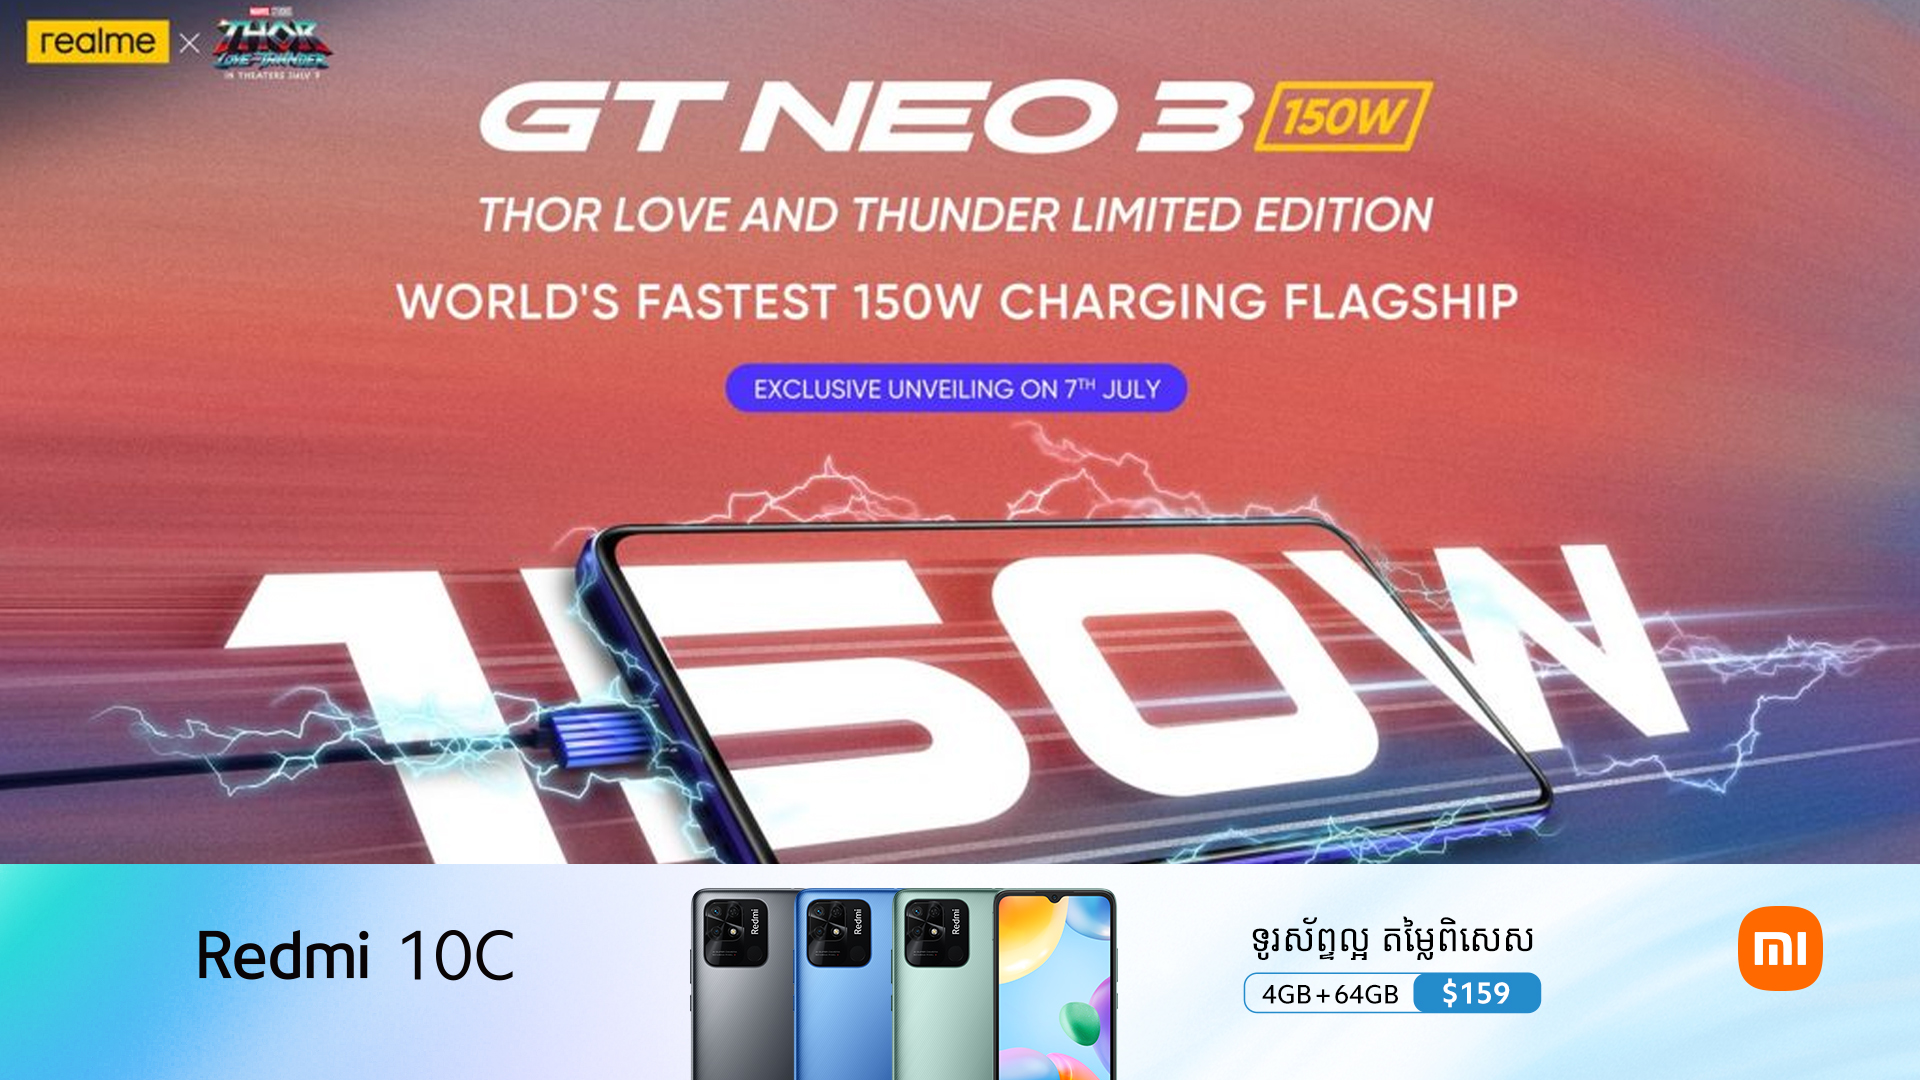 ព័ត៌មានផ្លូវការ: realme GT Neo 3 150W Thor Love និង Thunder Limited Edition បង្ហាញវត្តមាននៅថ្ងៃទី 7 ខែកក្កដានេះ